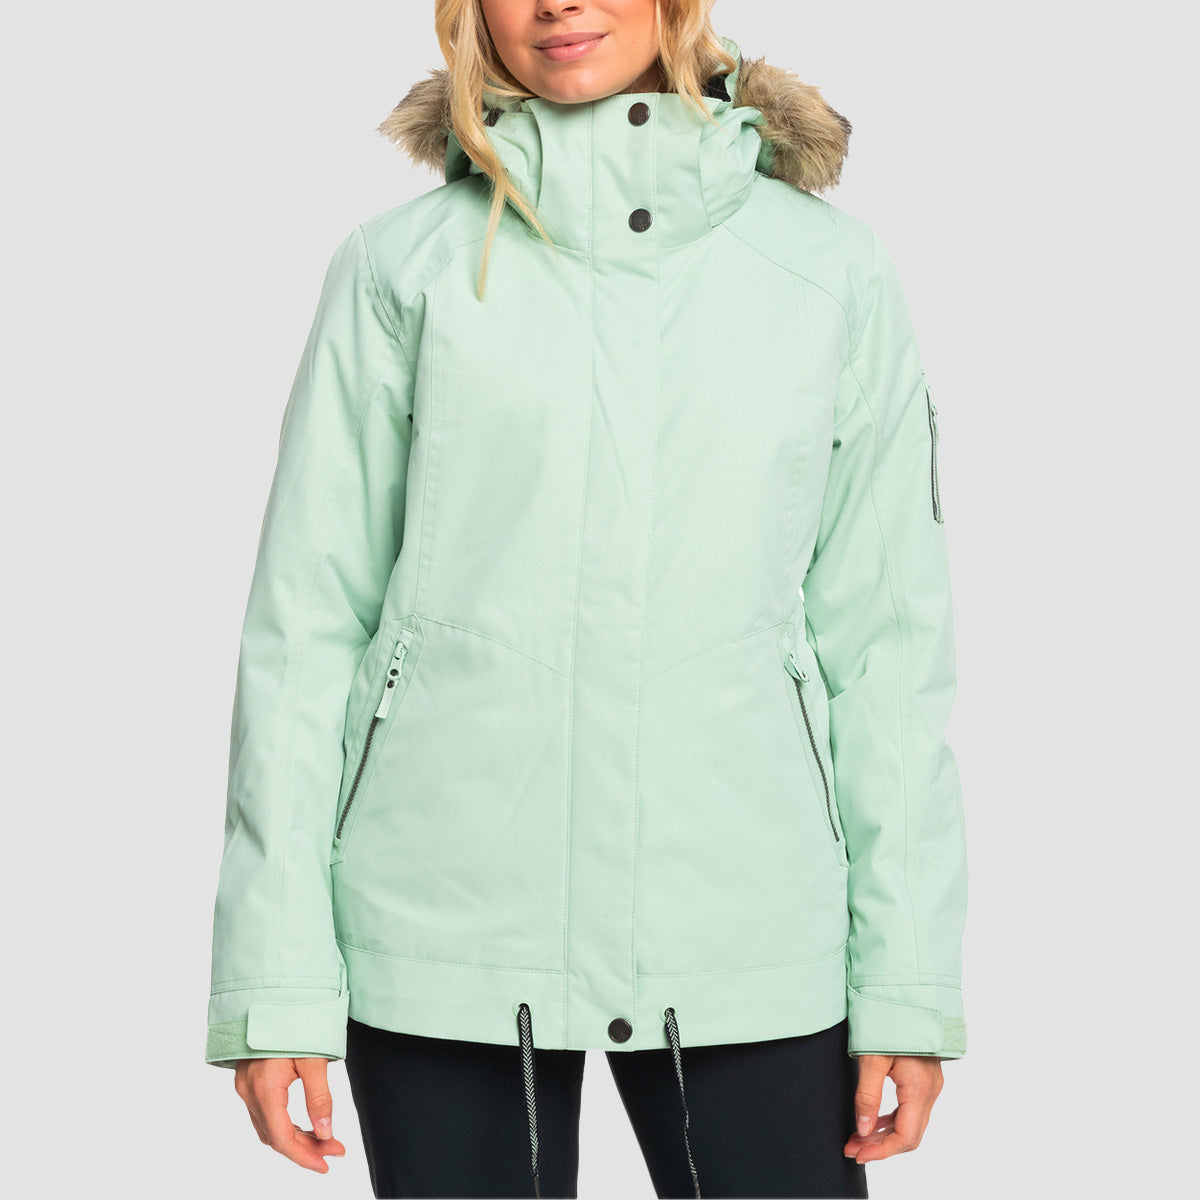 Roxy Meade 10K Snow Jacket Cameo Green - Womens